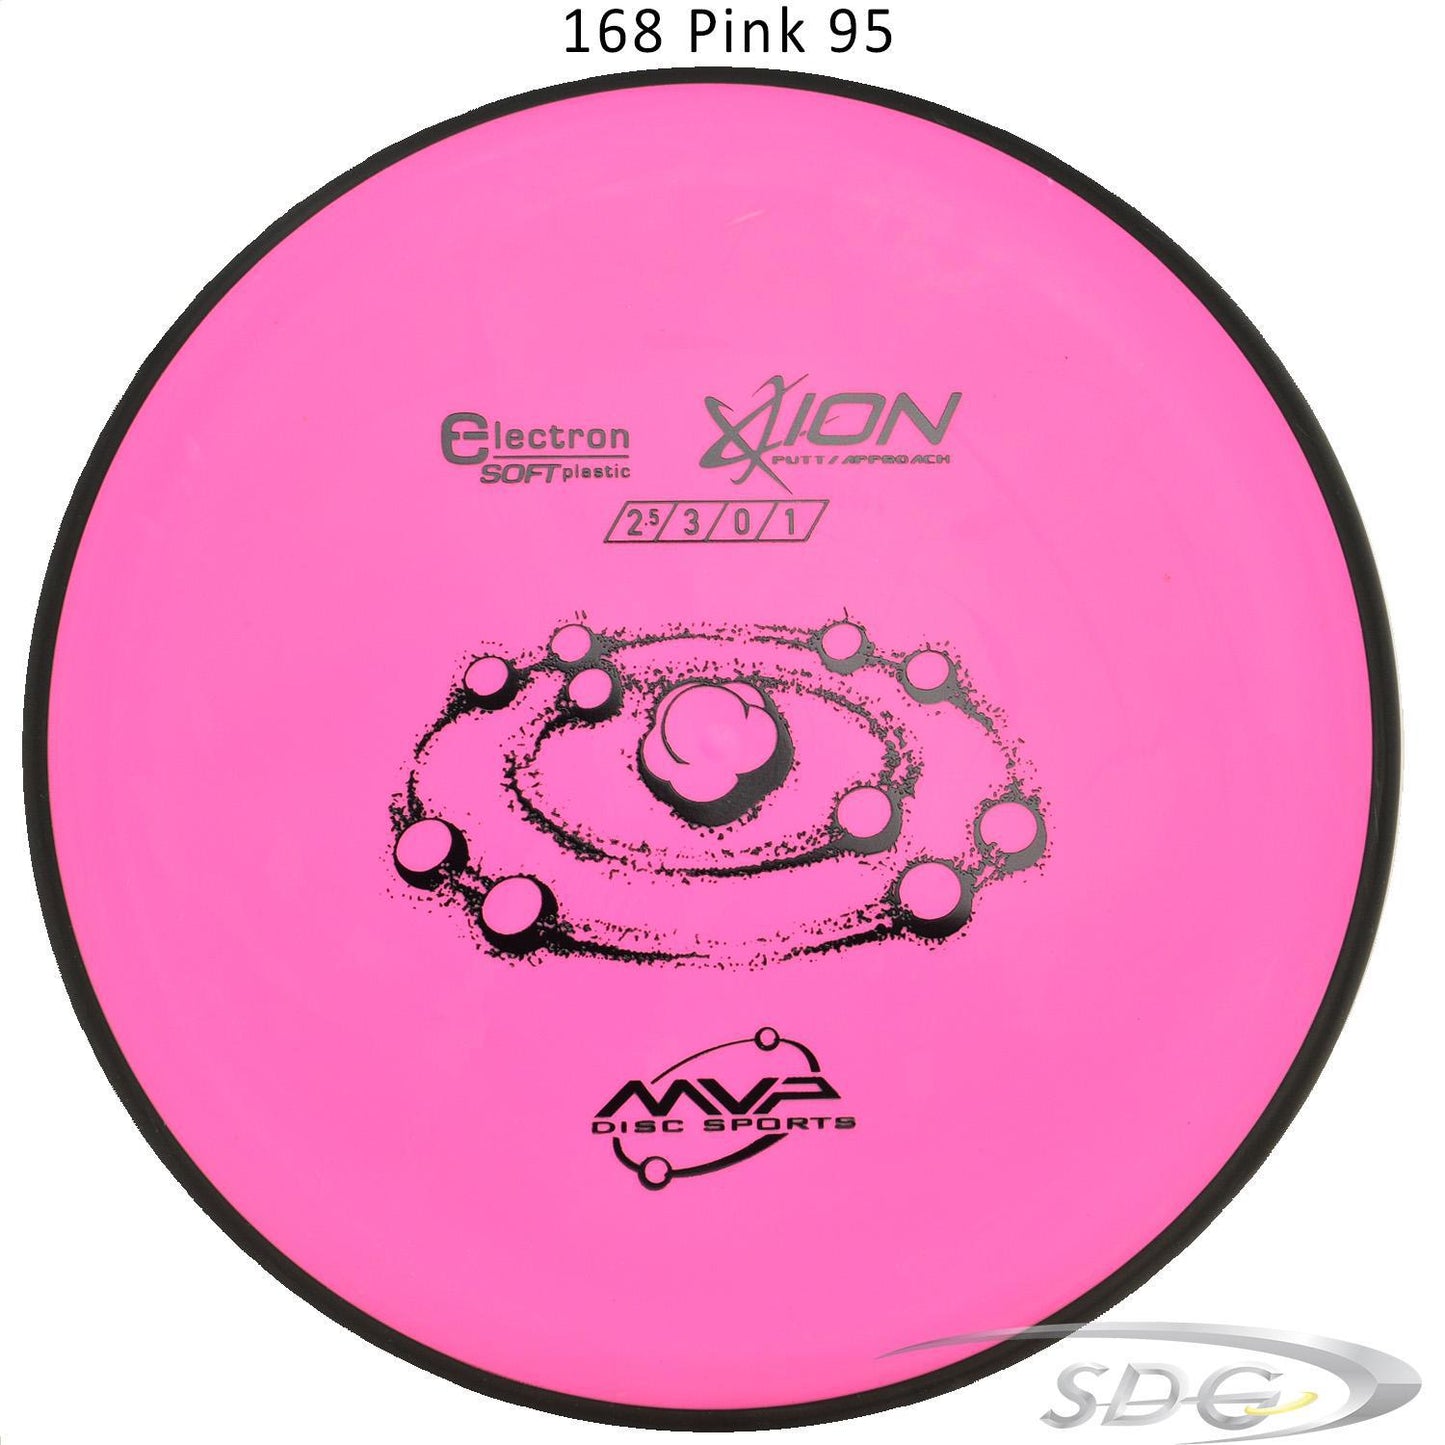 mvp-electron-ion-soft-disc-golf-putt-approach 168 Pink 95 